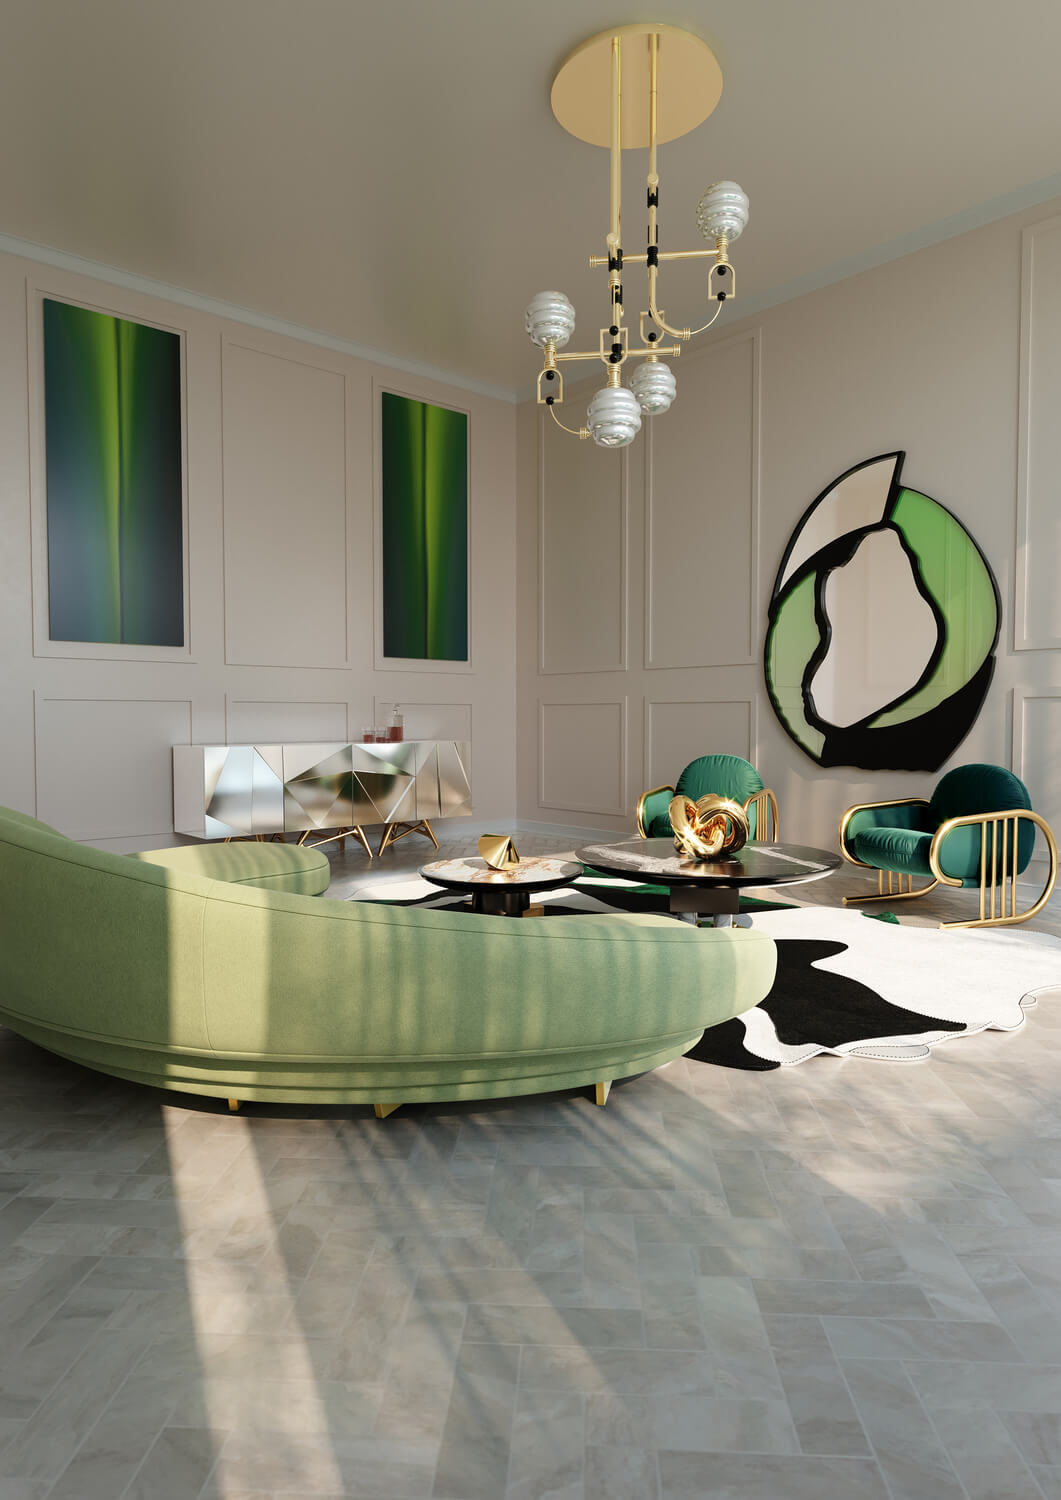 metaverse rooms with unique furniture design